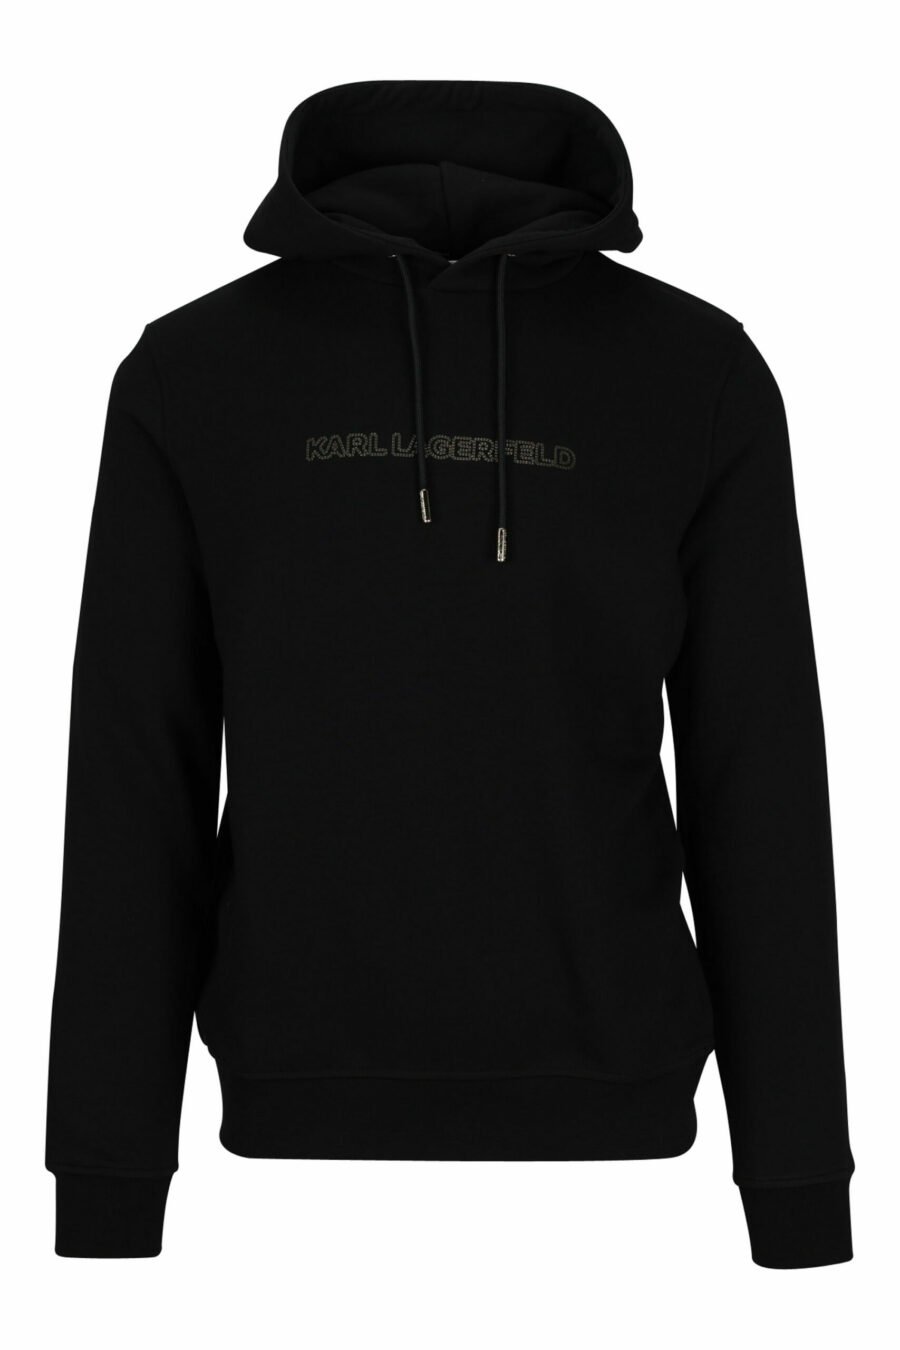 Schwarzes Kapuzensweatshirt mit goldenem Schriftzug - 4062226658478 skaliert